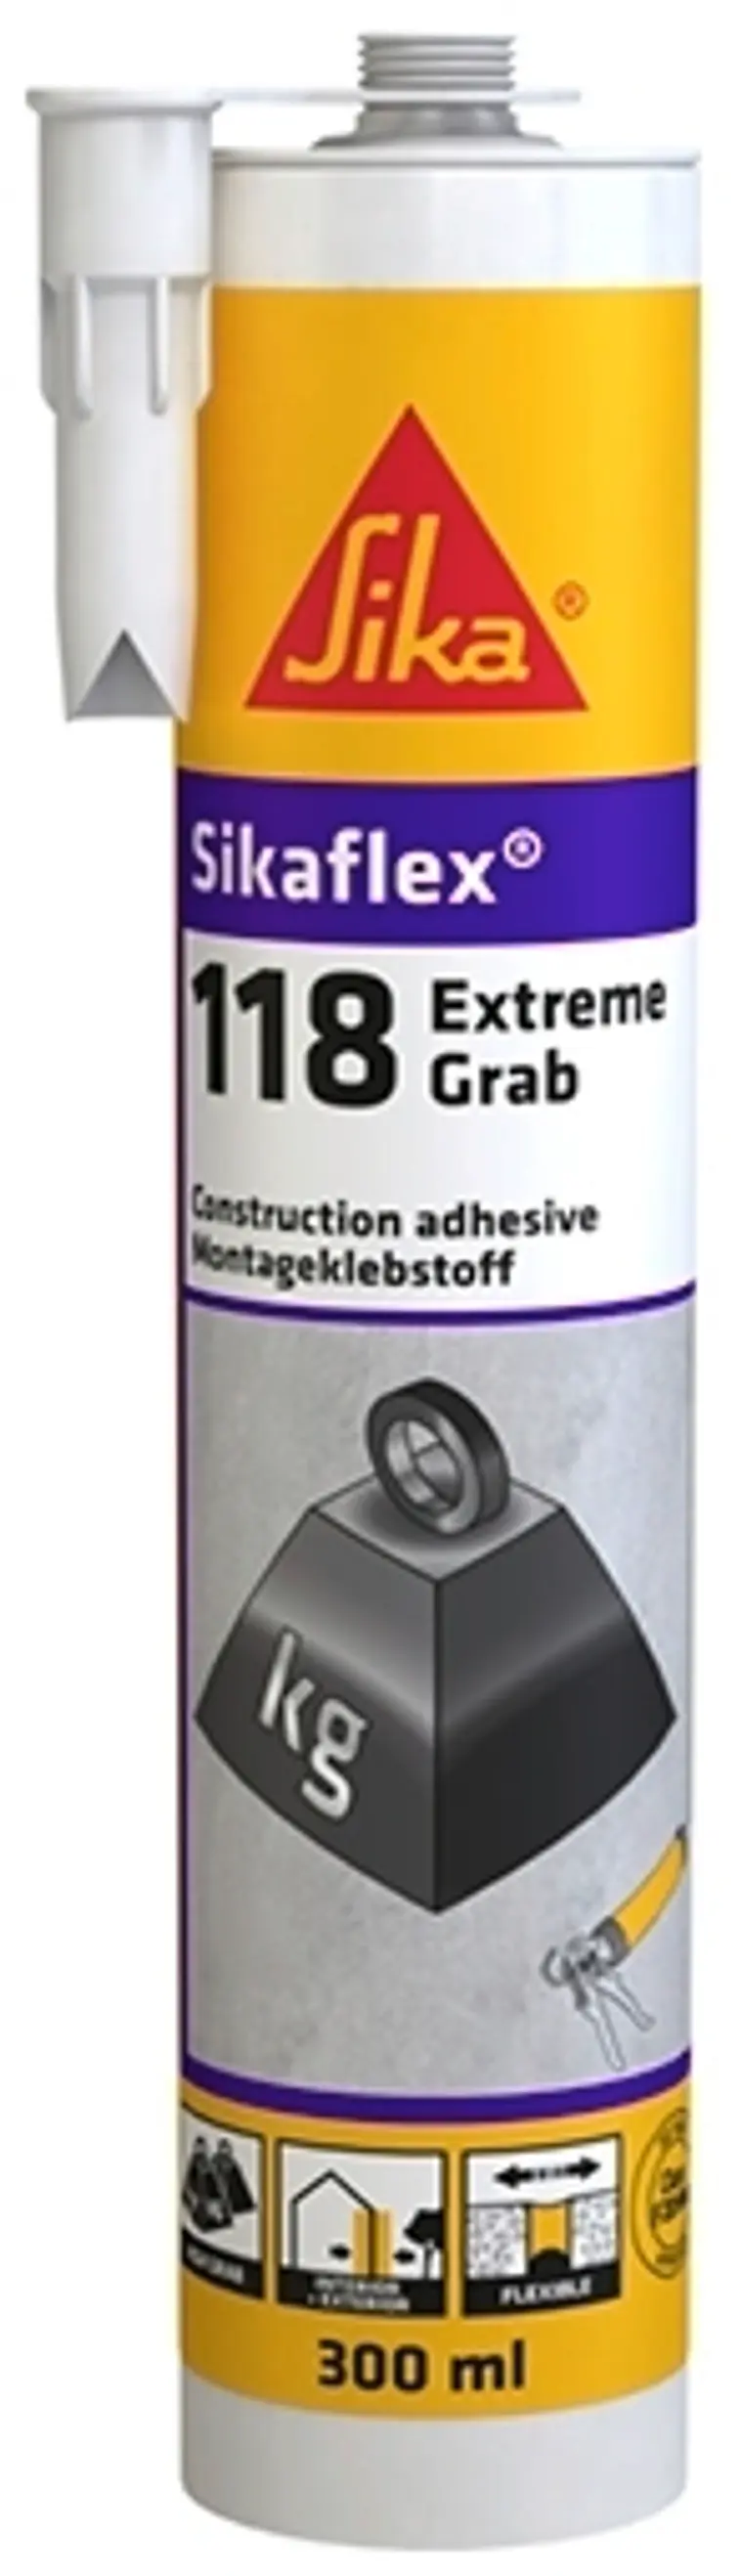 Sika Sikaflex-118 Extreme Grab asennusliima 290ML | Prisma verkkokauppa